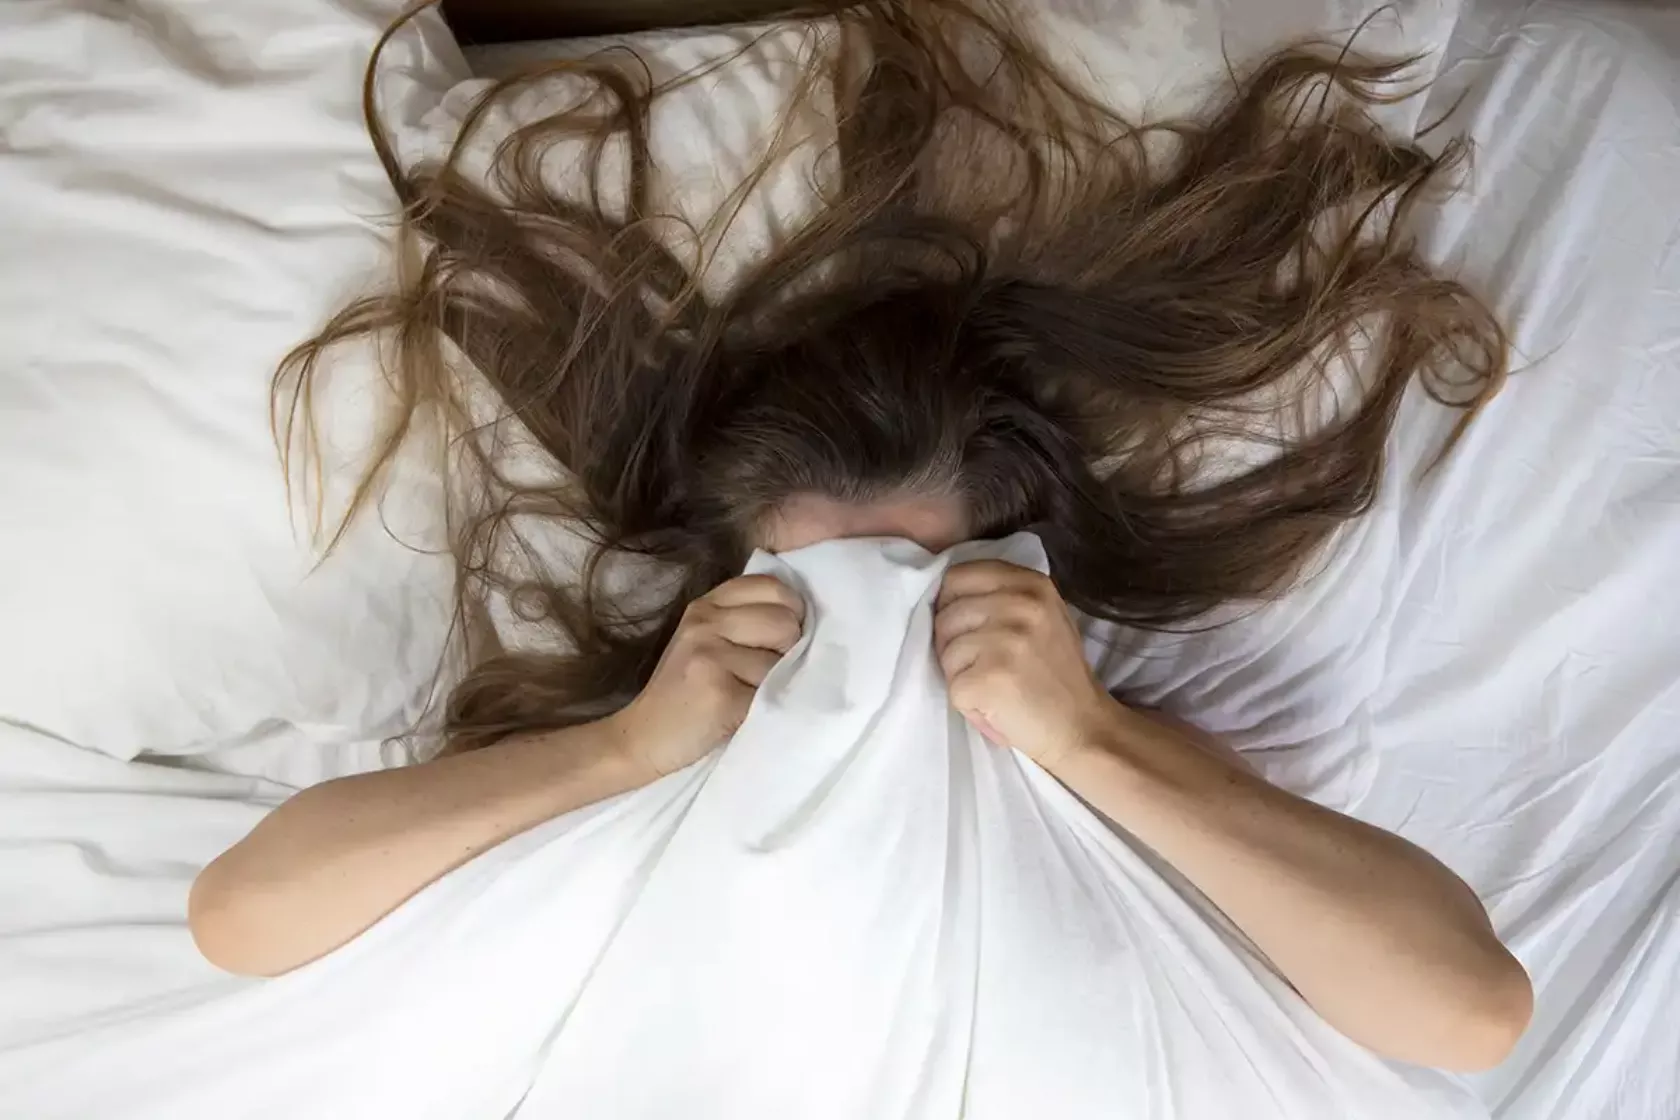 Frau zieht sich im Bett die Decke übers Gesicht.